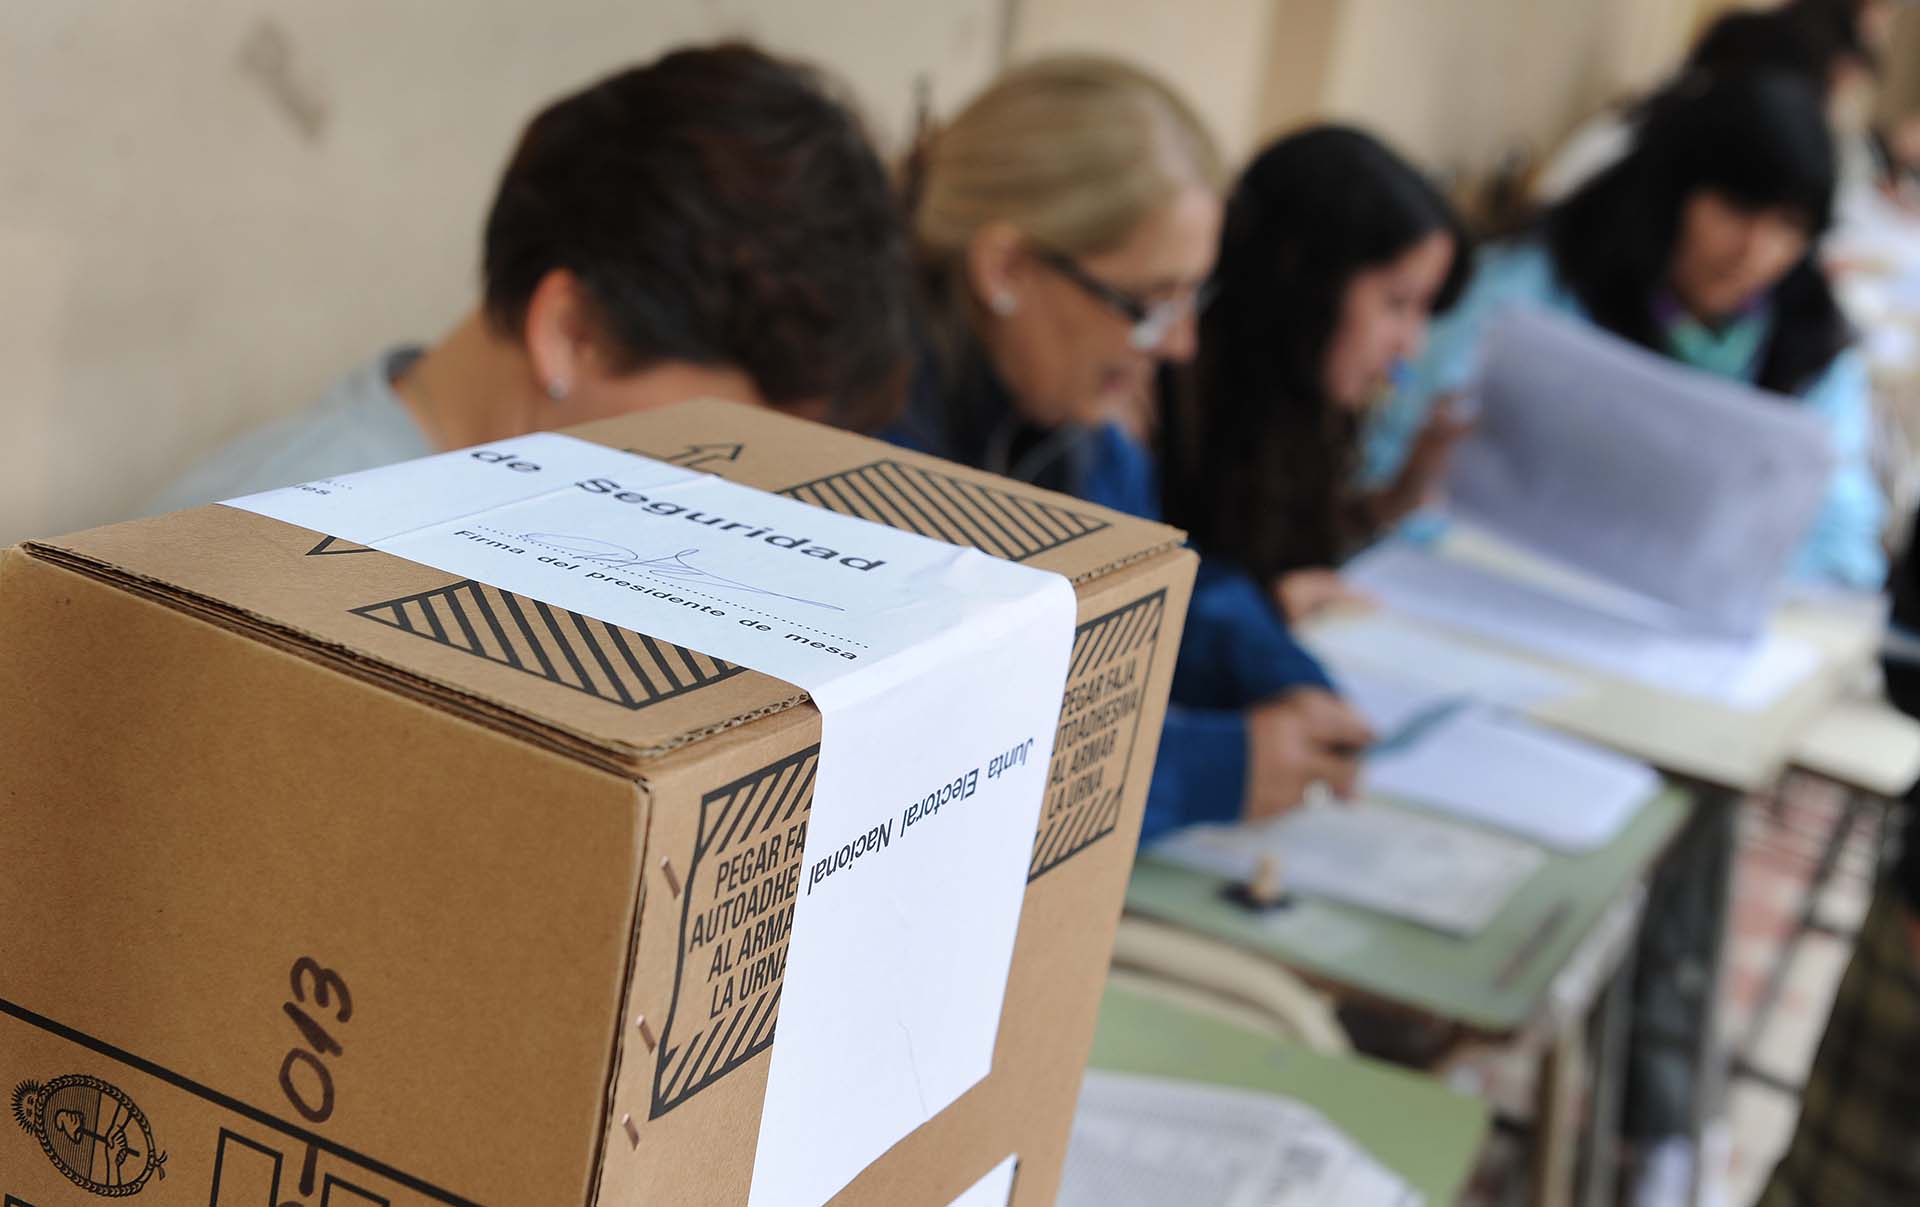 El voto en blanco cobra especial importancia en las PASO, donde las fuerzas políticas deben superar el 1,5% de los votos para poder presentarse en octubre.